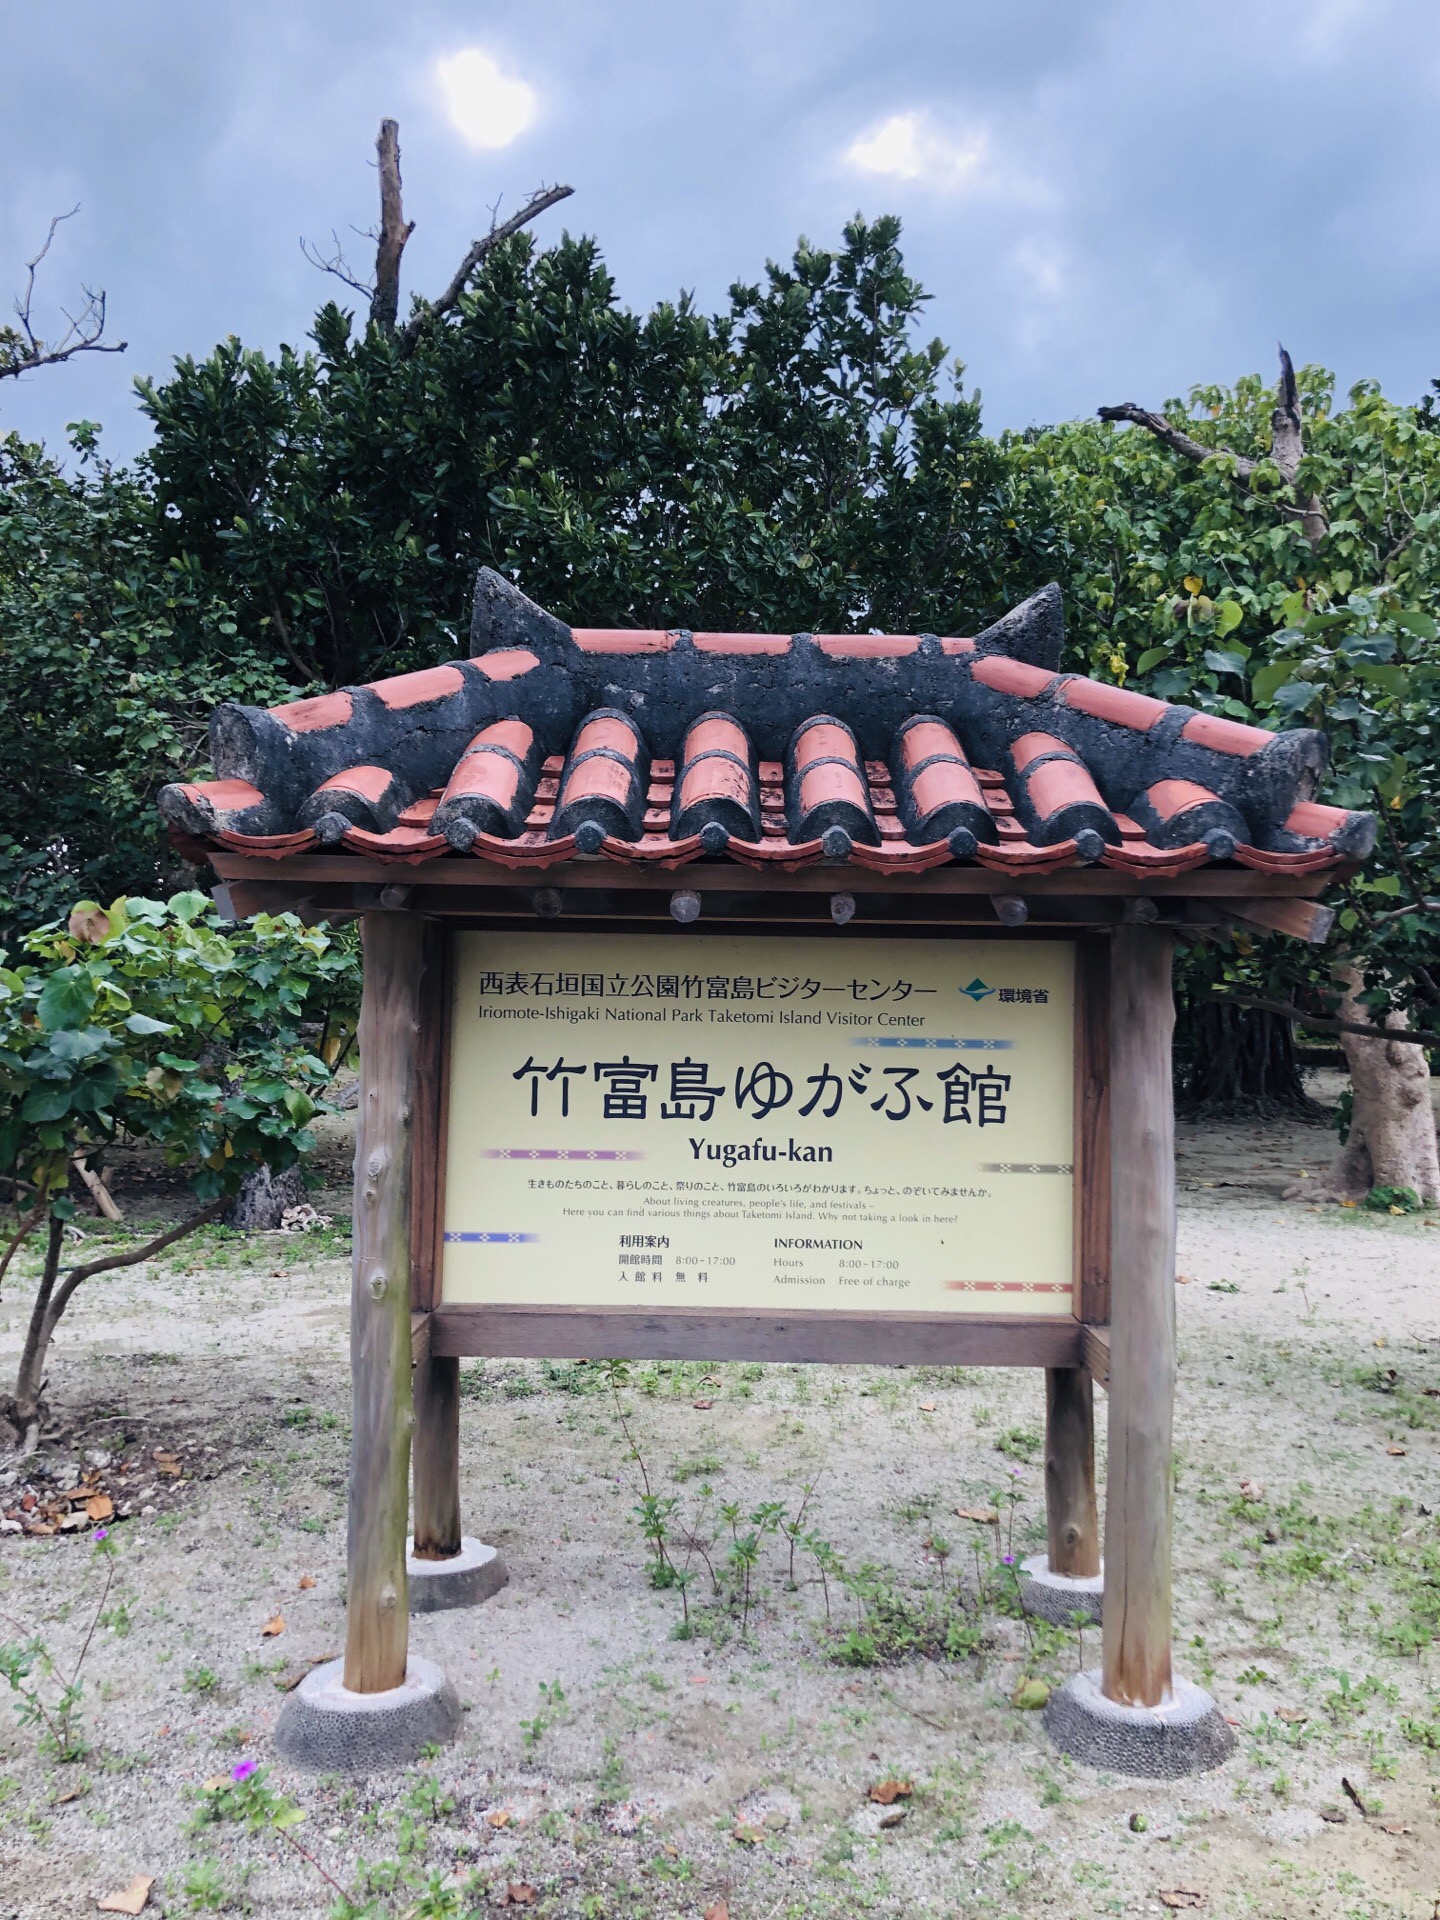 竹富岛离石垣岛约6.3公里面积为5.4平方公里，以有红色的房顶的建筑物为名，白砂的道路，是古代冲绳保